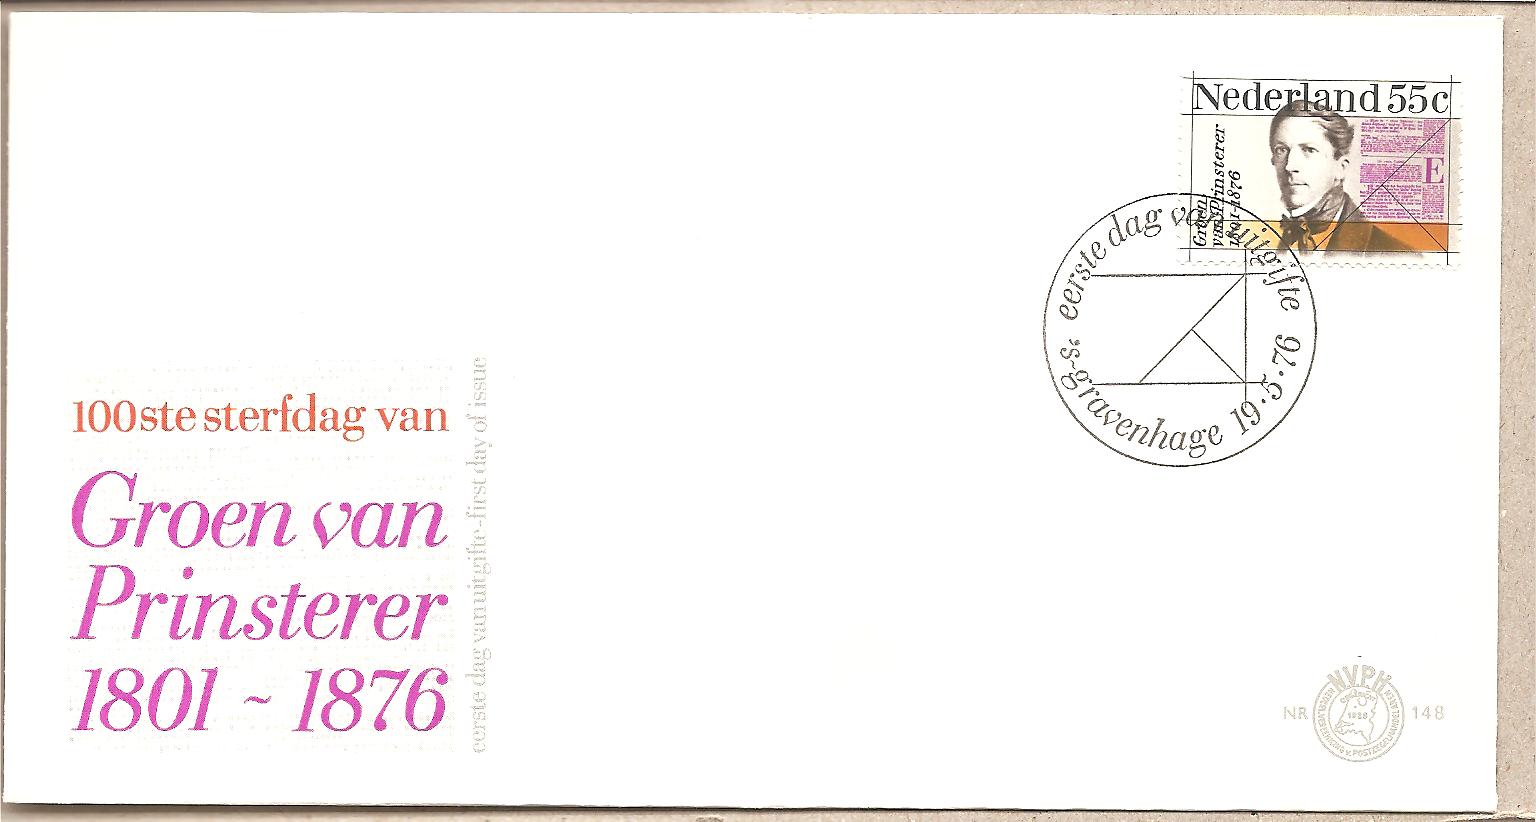 41534 - Paesi Bassi - busta FDC con serie completa: centenario della morte dello statista Van Prinsterer - 1976